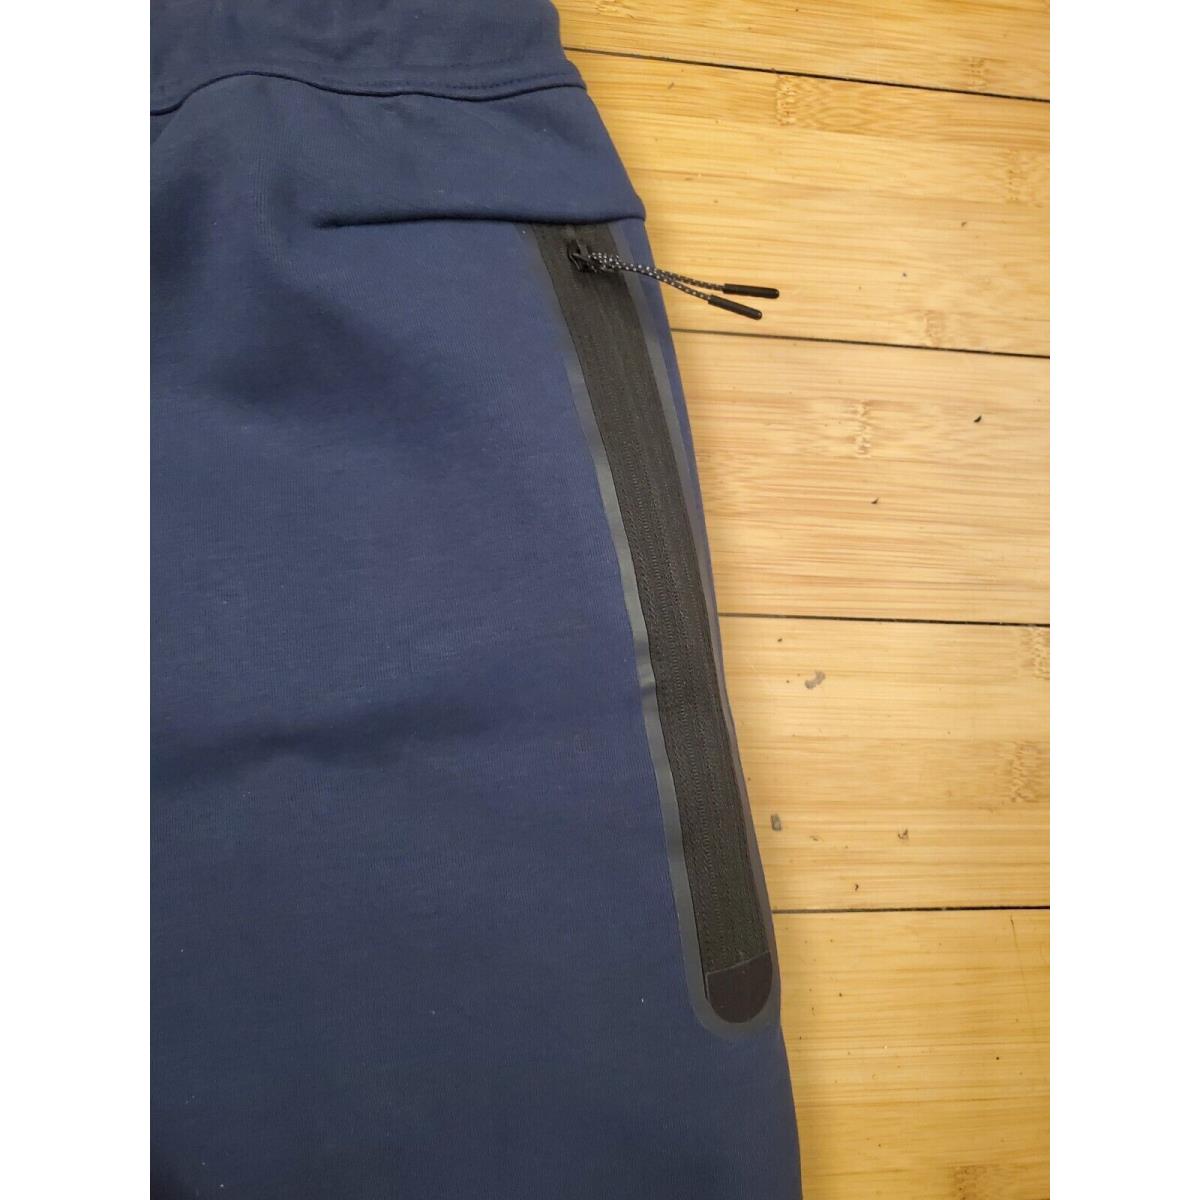 Nike Tech Fleece Pants Joggers Sweatpants Obsidian Navy Blue CU4495-410  Men's